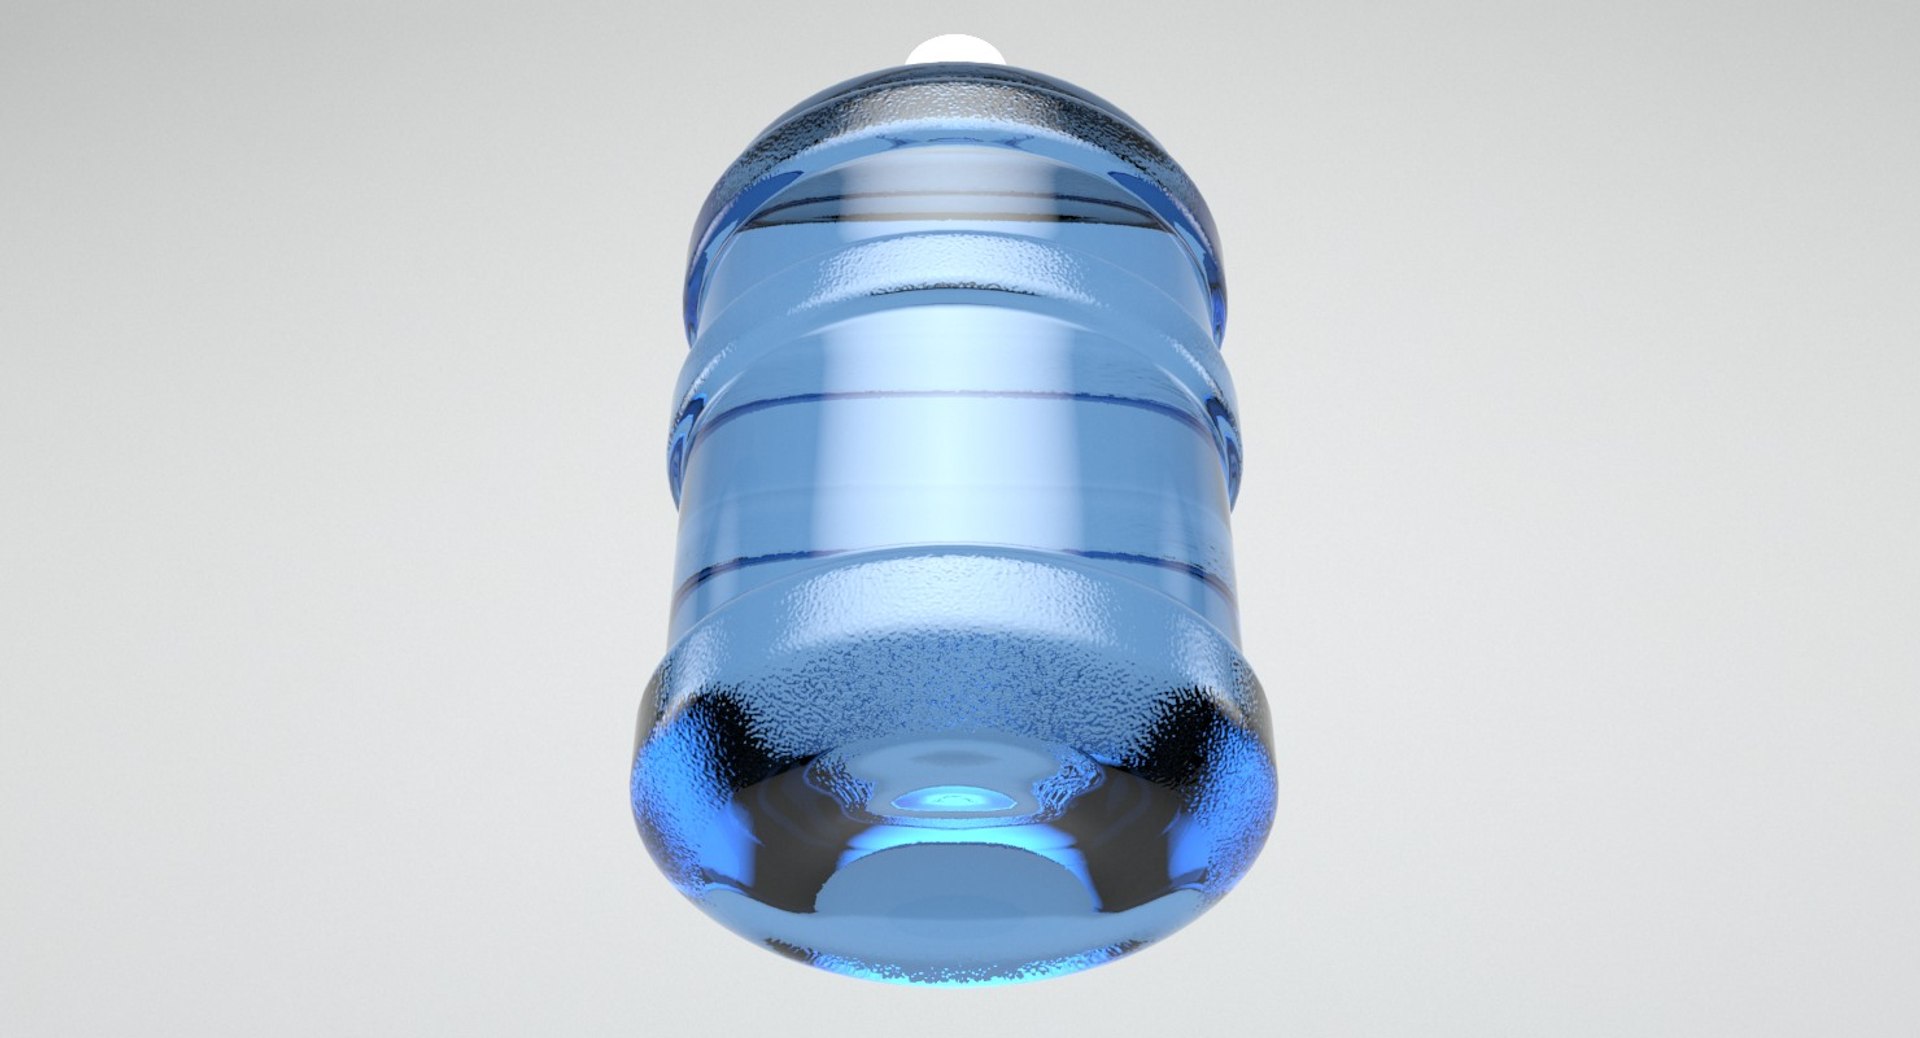 Water Jug 3D Model - TurboSquid 1238961